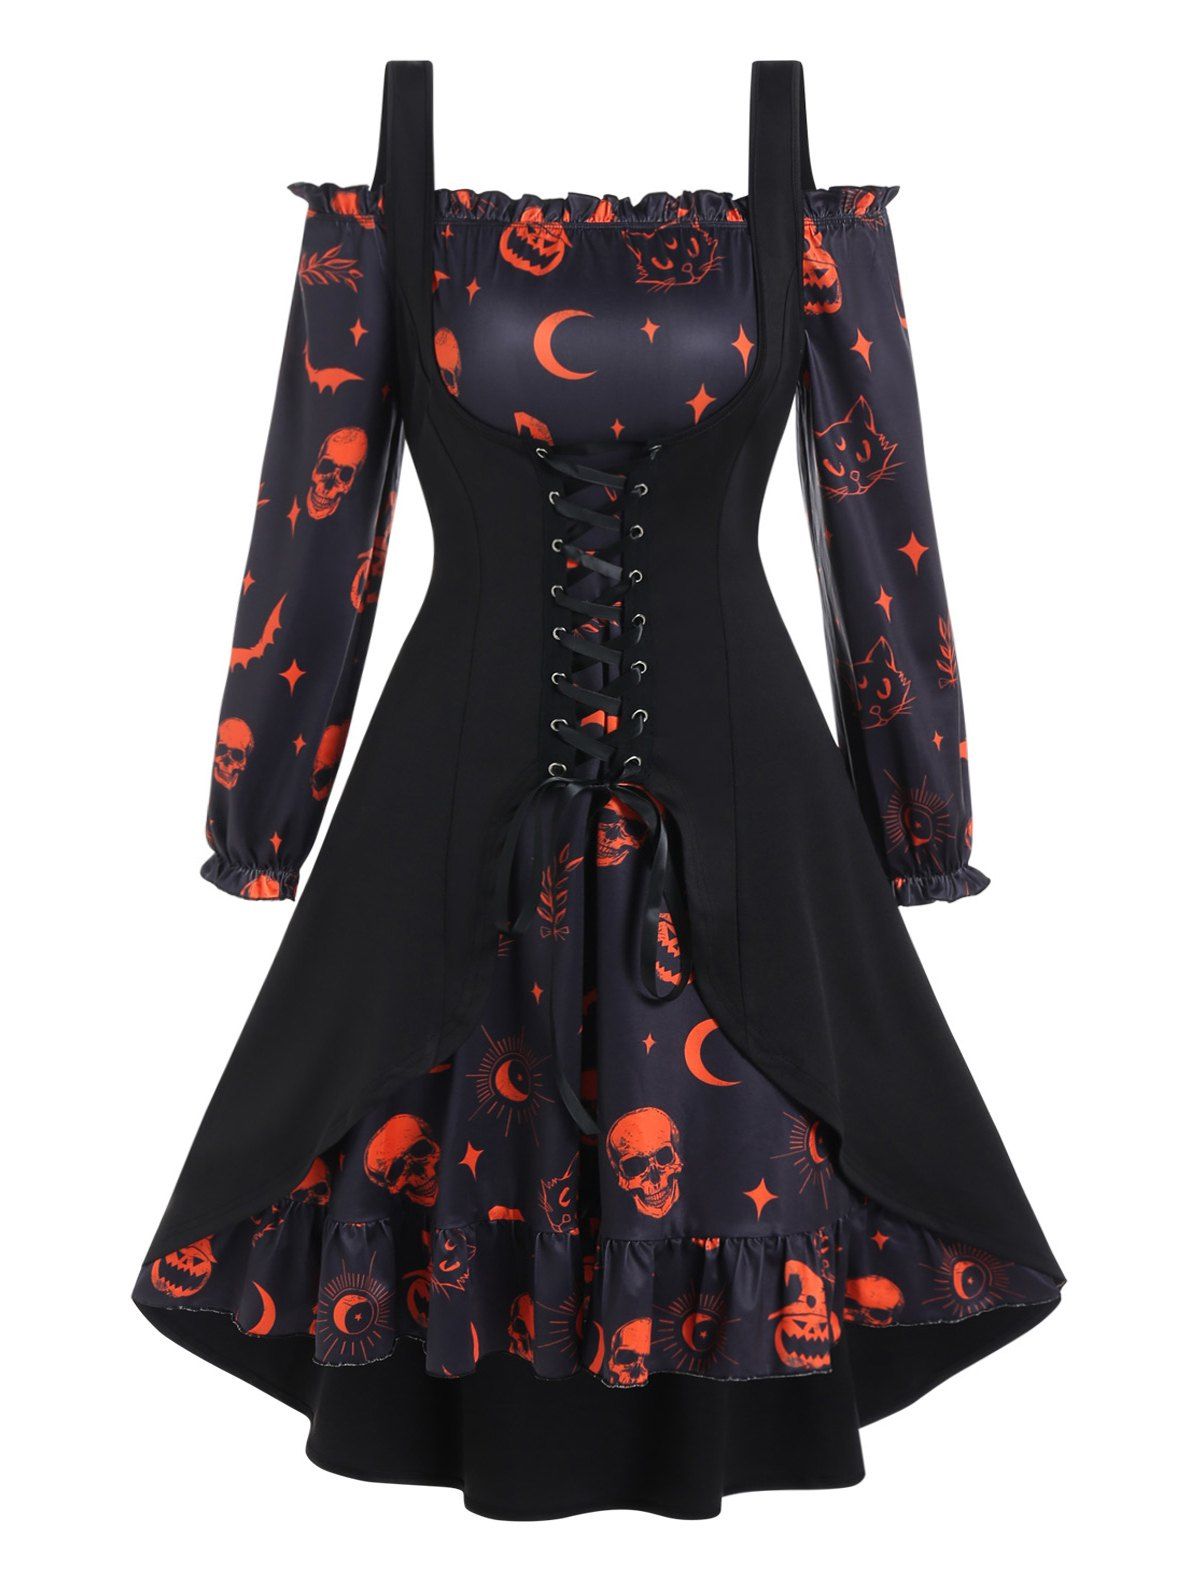 Plus Size Halloween Dress Pumpkin Skull Bat Cat Print Ruffle A Line Mini Dress And Lace Up Slit Tank Top Set - BLACK 5X